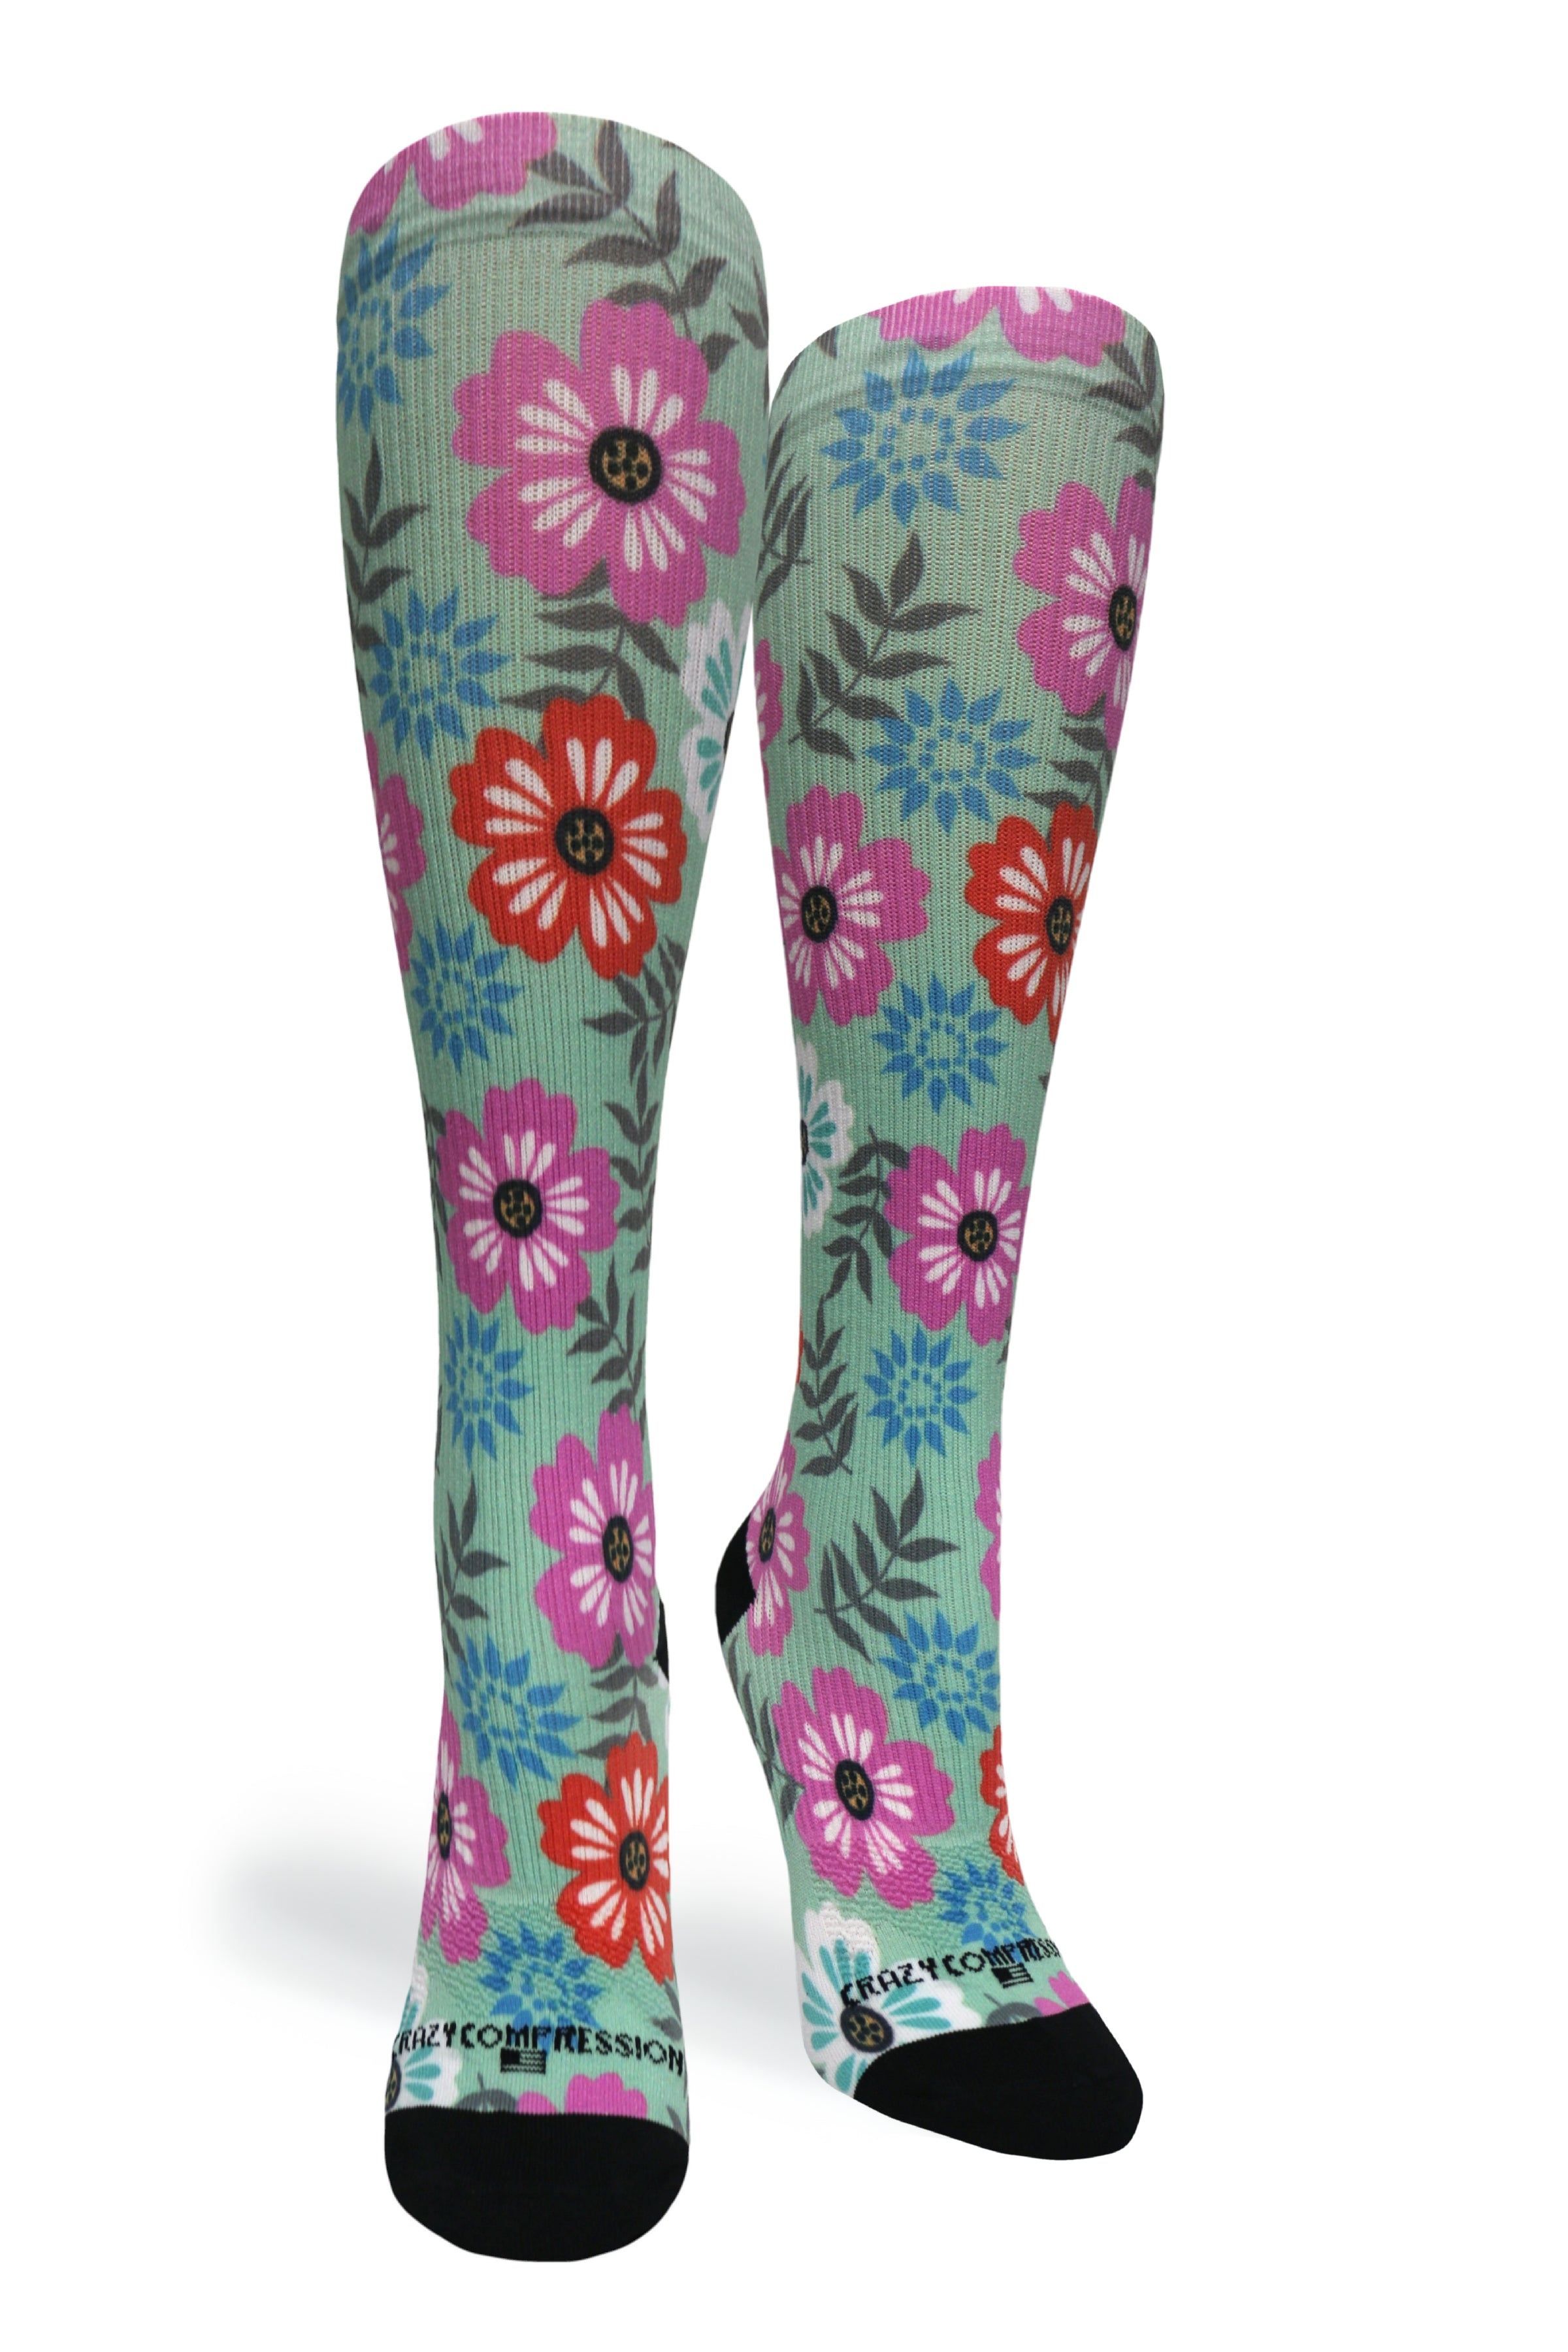 360 Floral Details OTC Compression Socks (Standard & Extra Wide)